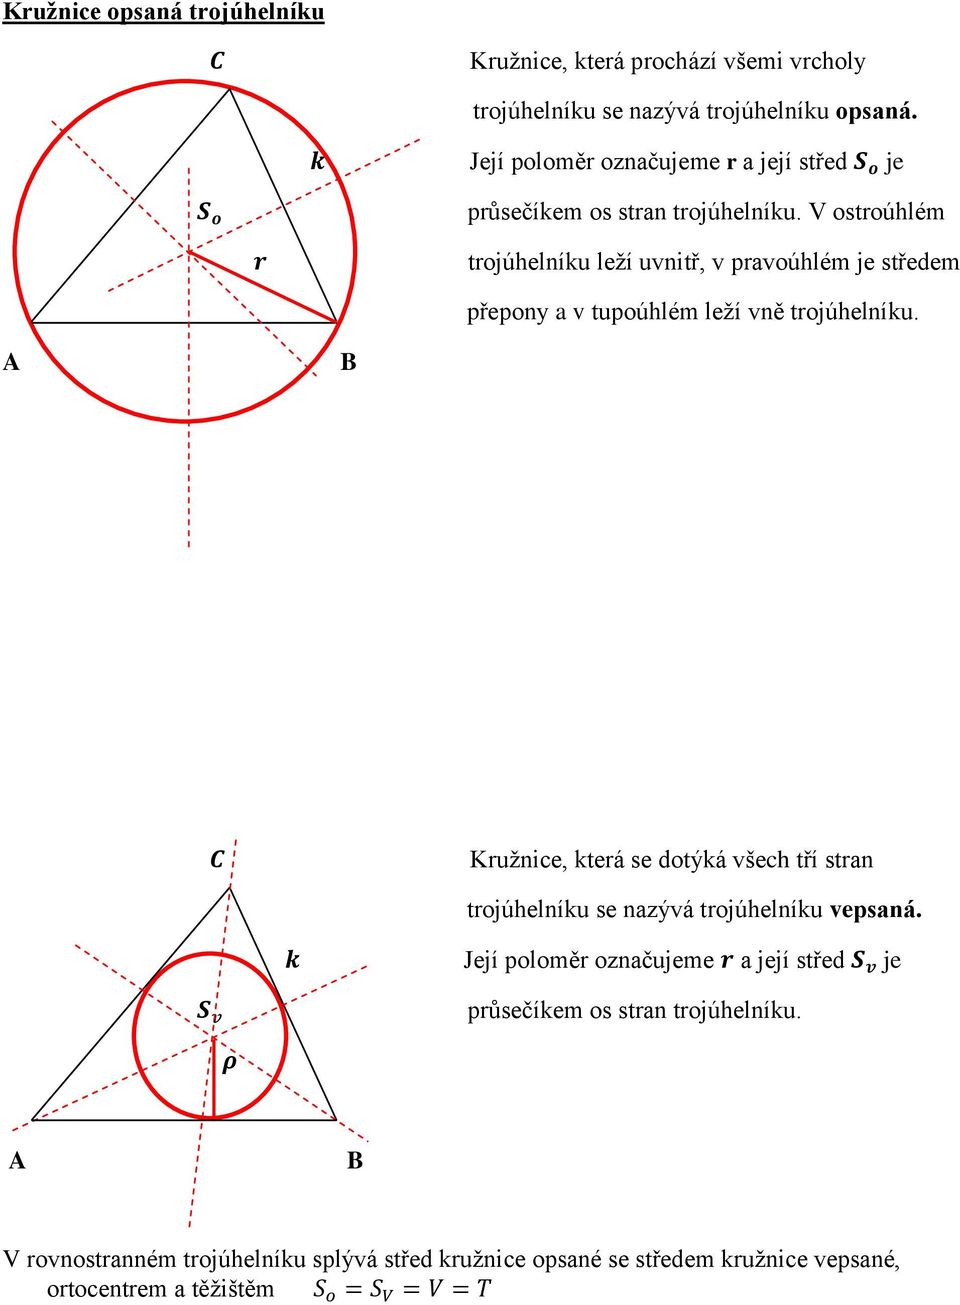 V ostroúhlém trojúhelníku leţí uvnitř, v pravoúhlém je středem přepony a v tupoúhlém leţí vně trojúhelníku.